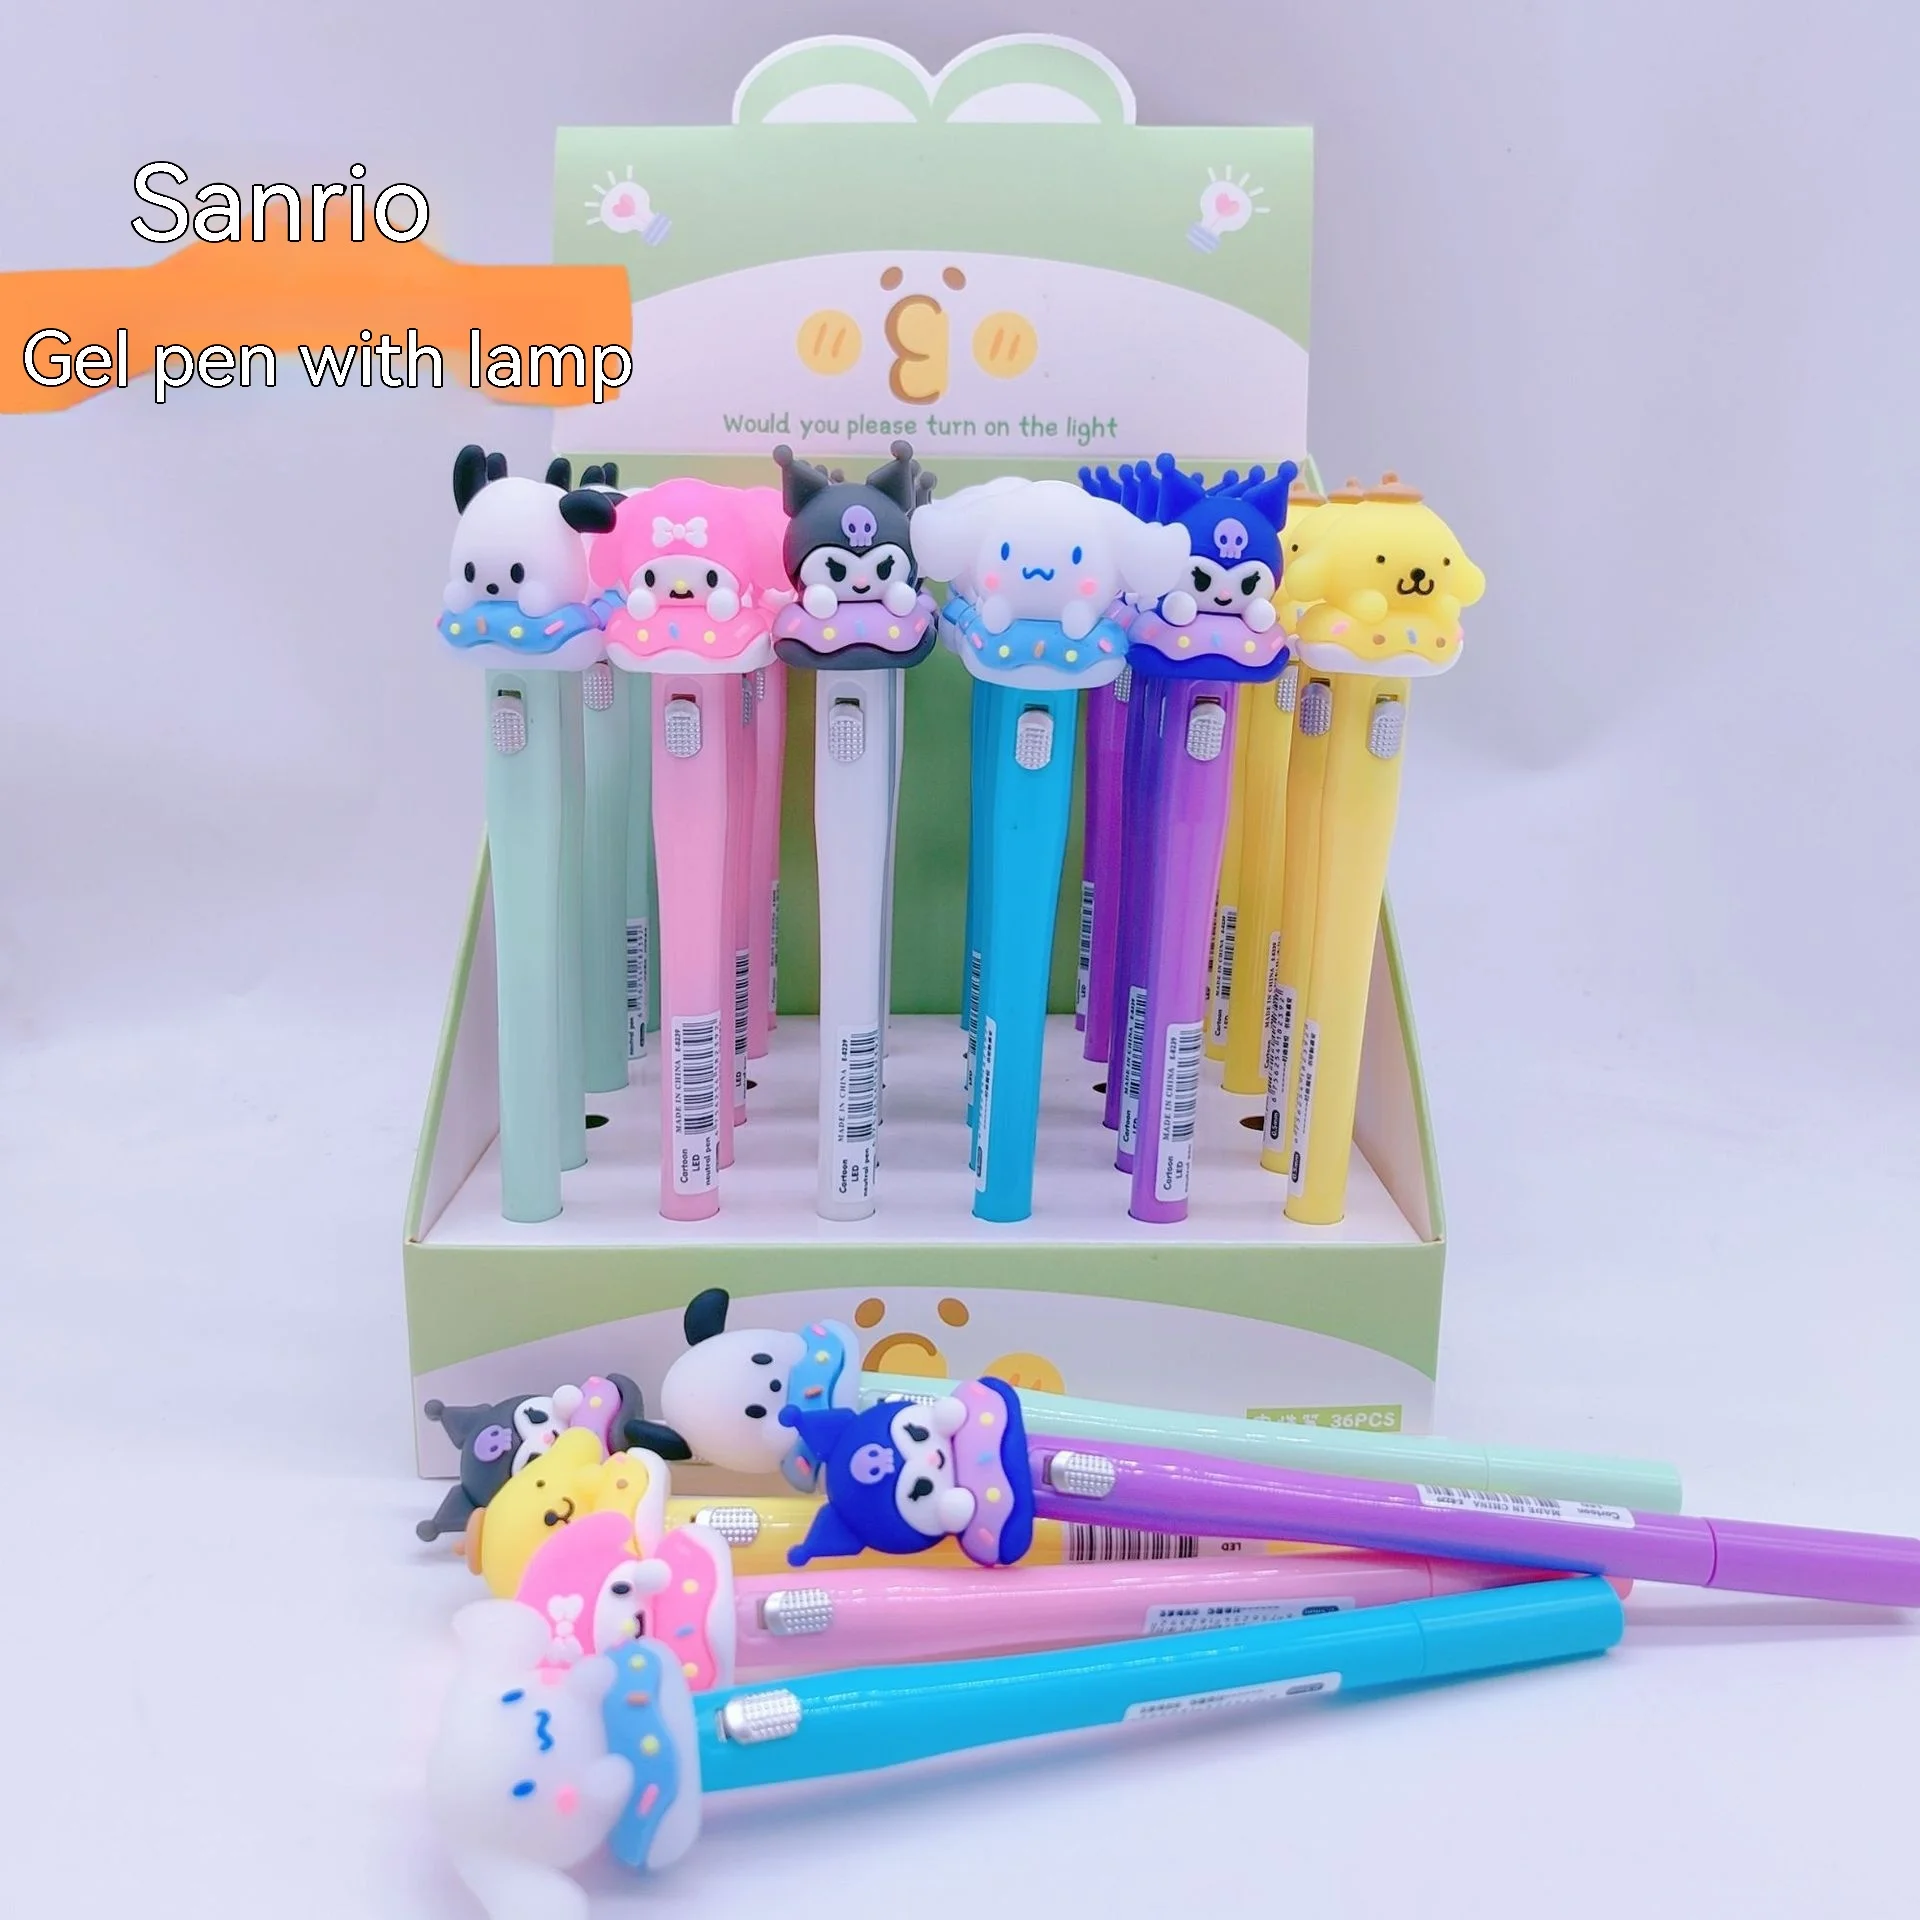 

Милые Креативные Канцтовары Sanrio, гелевая ручка с нефритовым лавром и собакой, светящаяся ручка, для учеников начальной школы с черной водяной ручкой с подсветкой